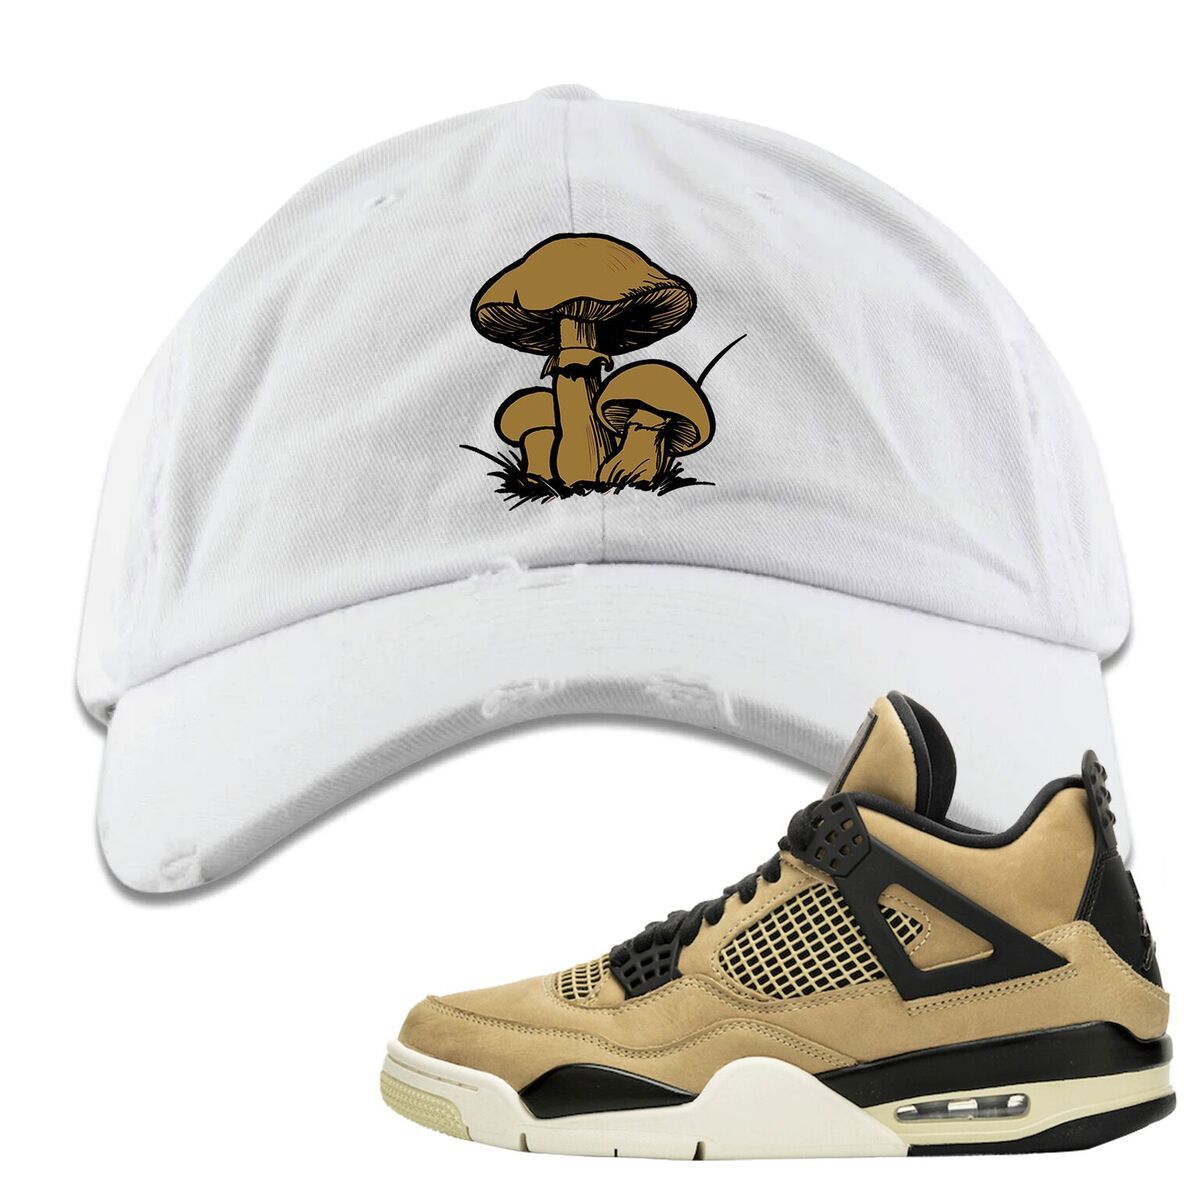 Jordan 4 WMNS Mushroom Sneaker Matching White Eat Me Distressed Dad Hat